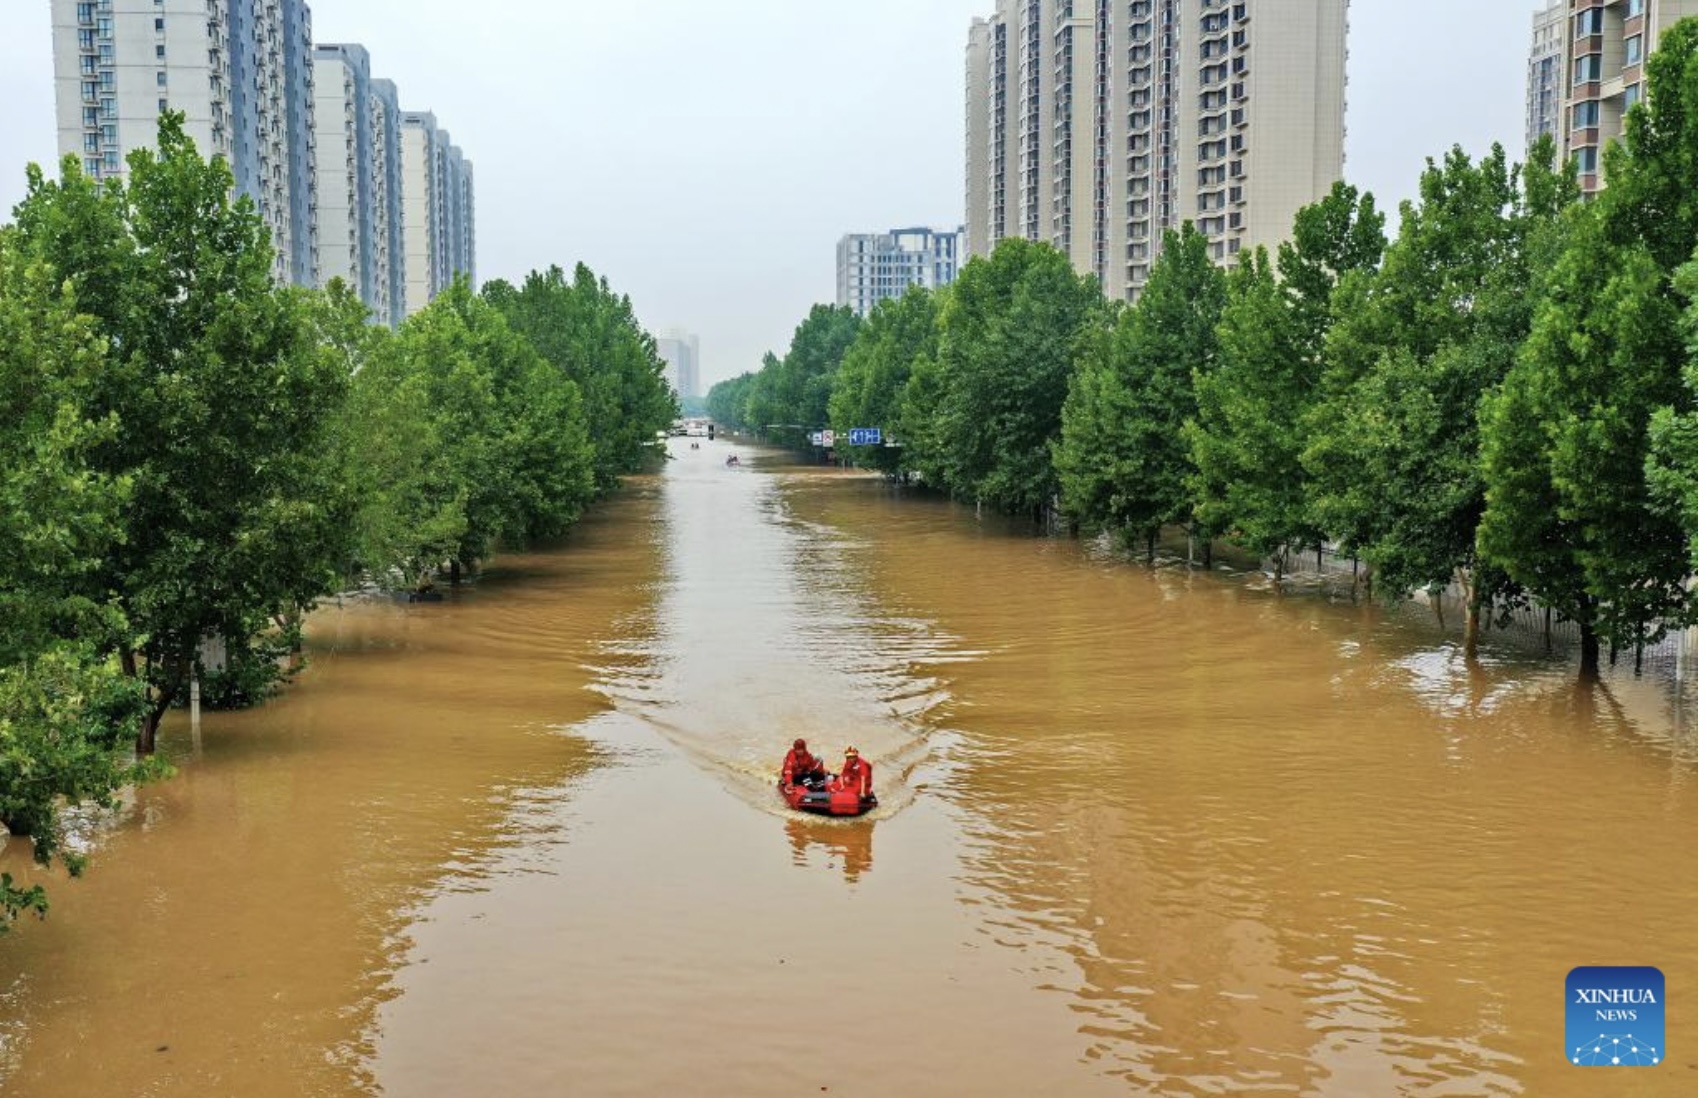 Lực lượng cứu hộ Trung Quốc đang sơ tán những người bị mắc kẹt trong lũ lụt ở Trác Châu, tỉnh Hà Bắc trong bối cảnh mưa bão. Ảnh: Xinhua